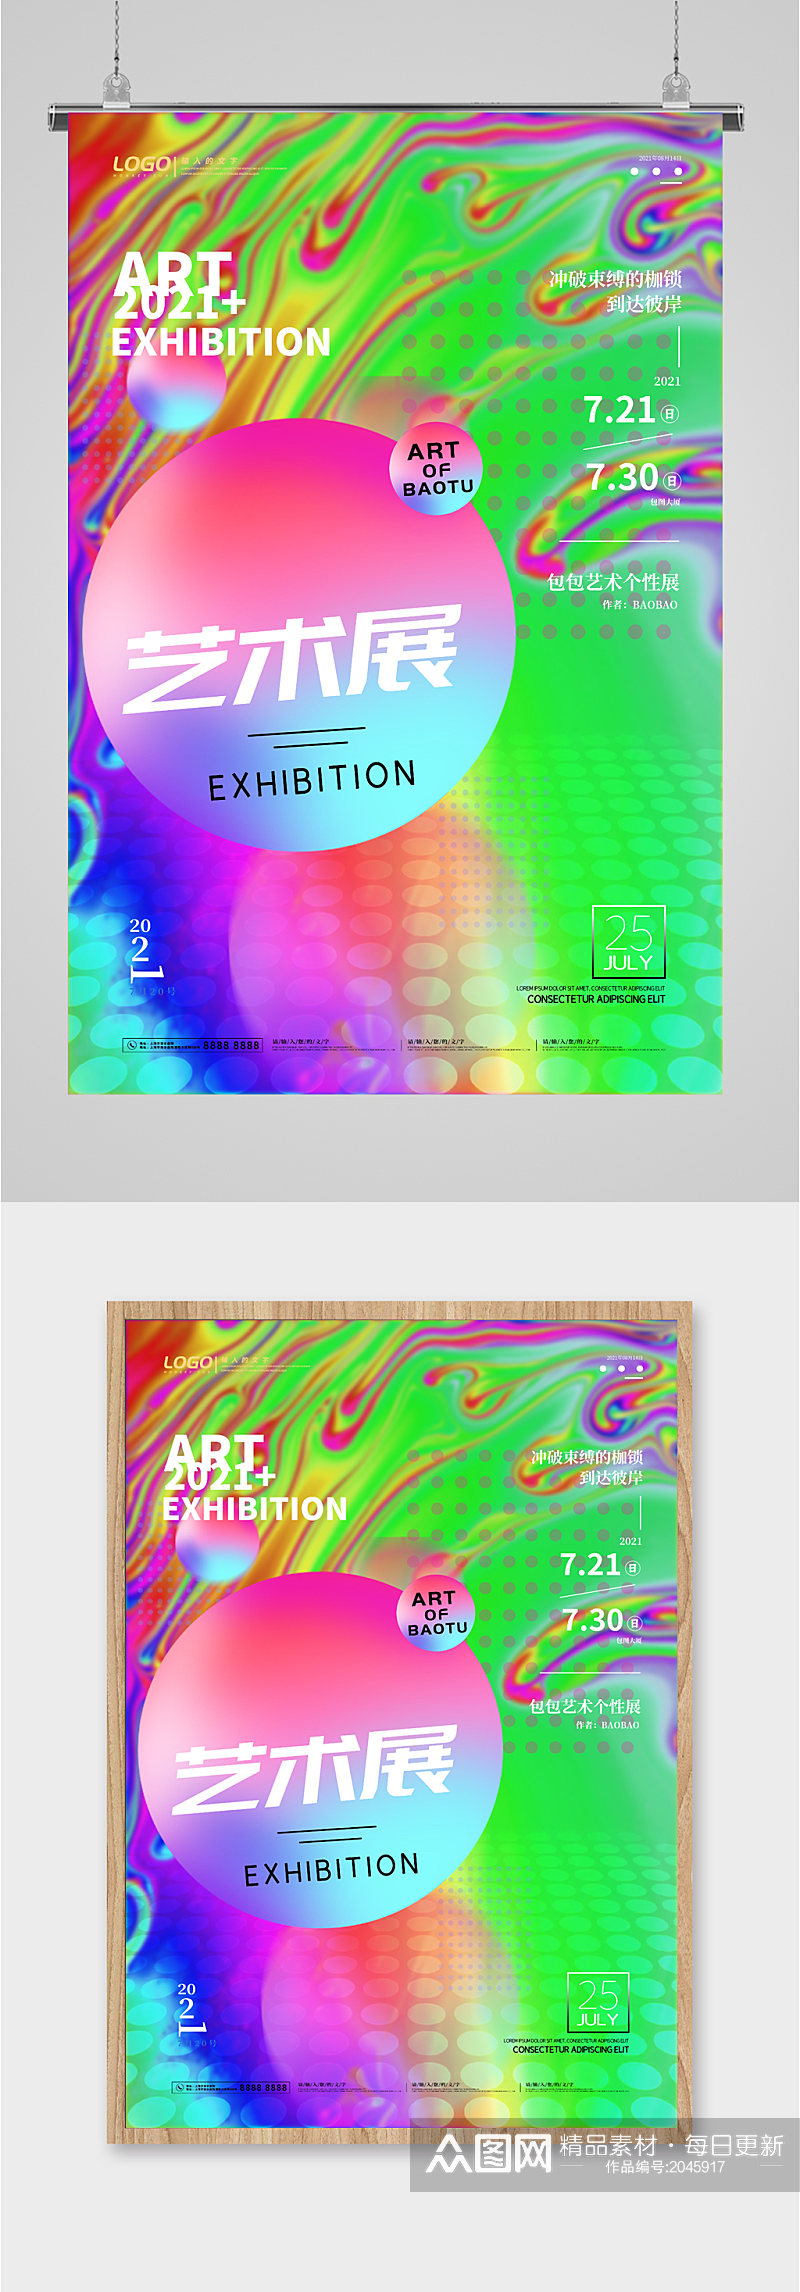 彩色设计艺术展览海报素材